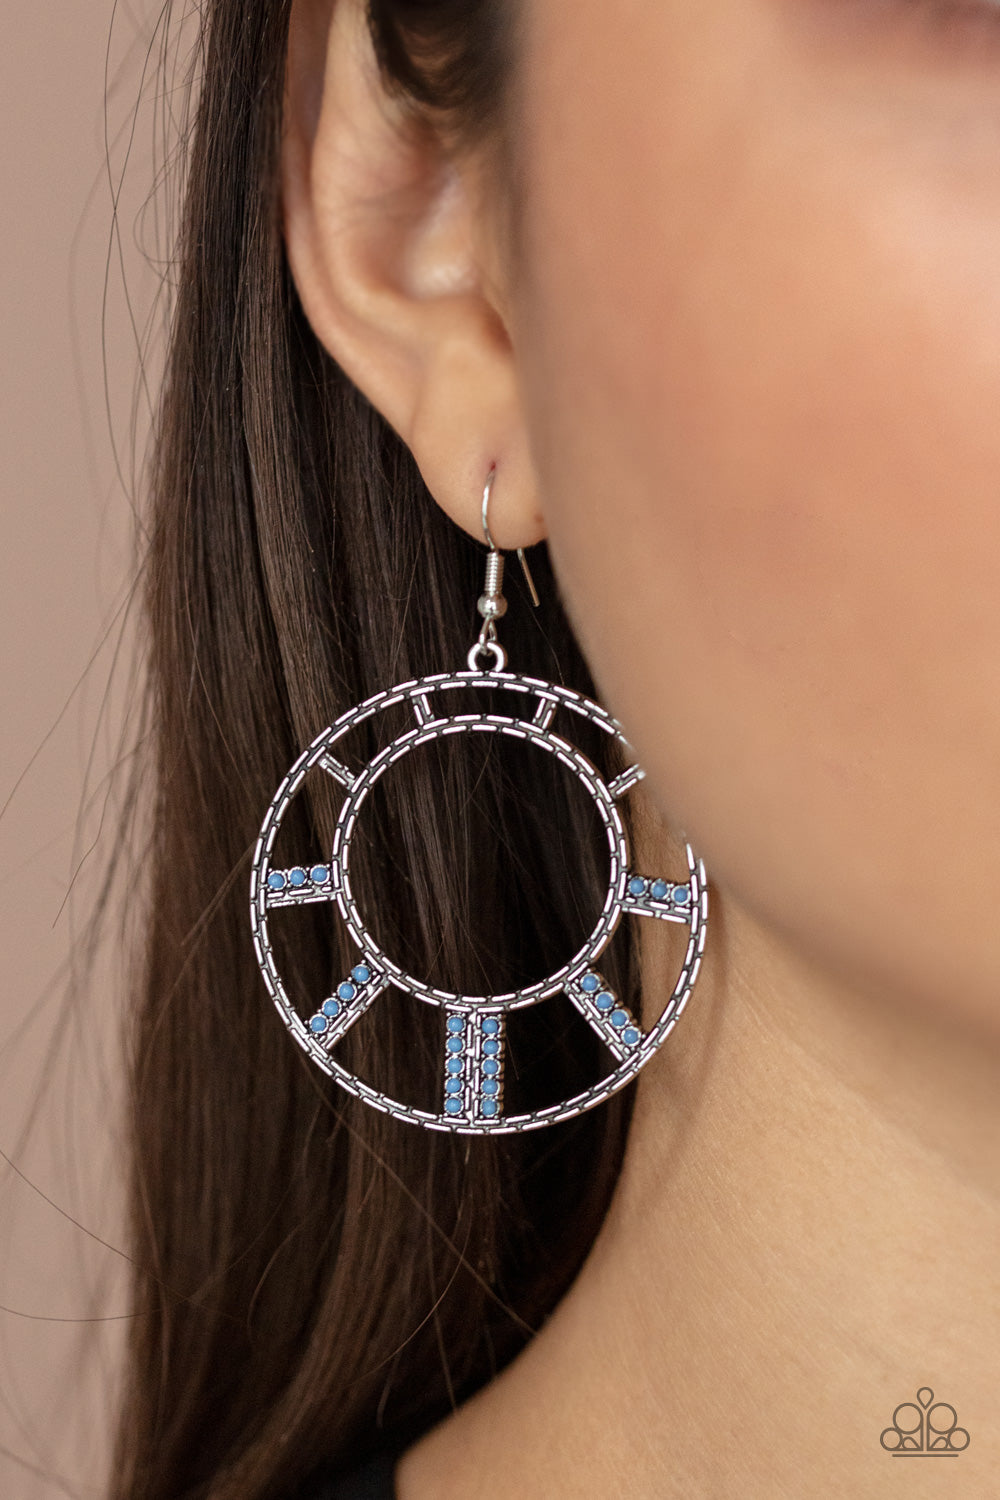 Paparazzi Fleek Fortress - Blue - Earrings - $5 Jewelry with Ashley Swint